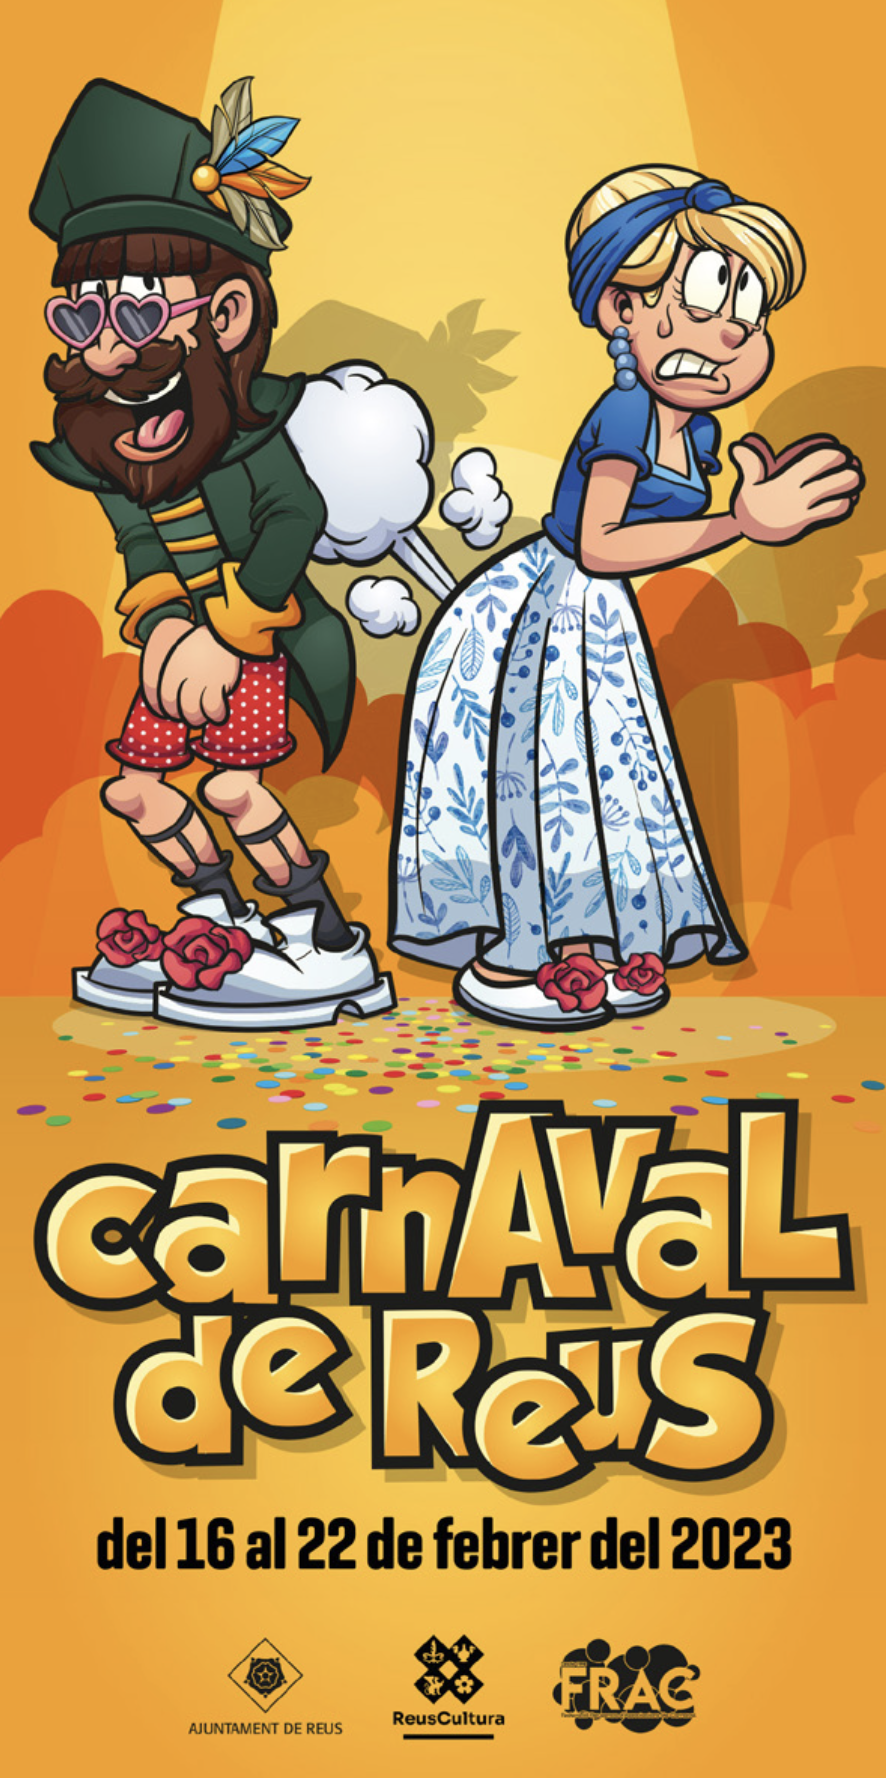 Carnaval 2023: Plantada de carrosses